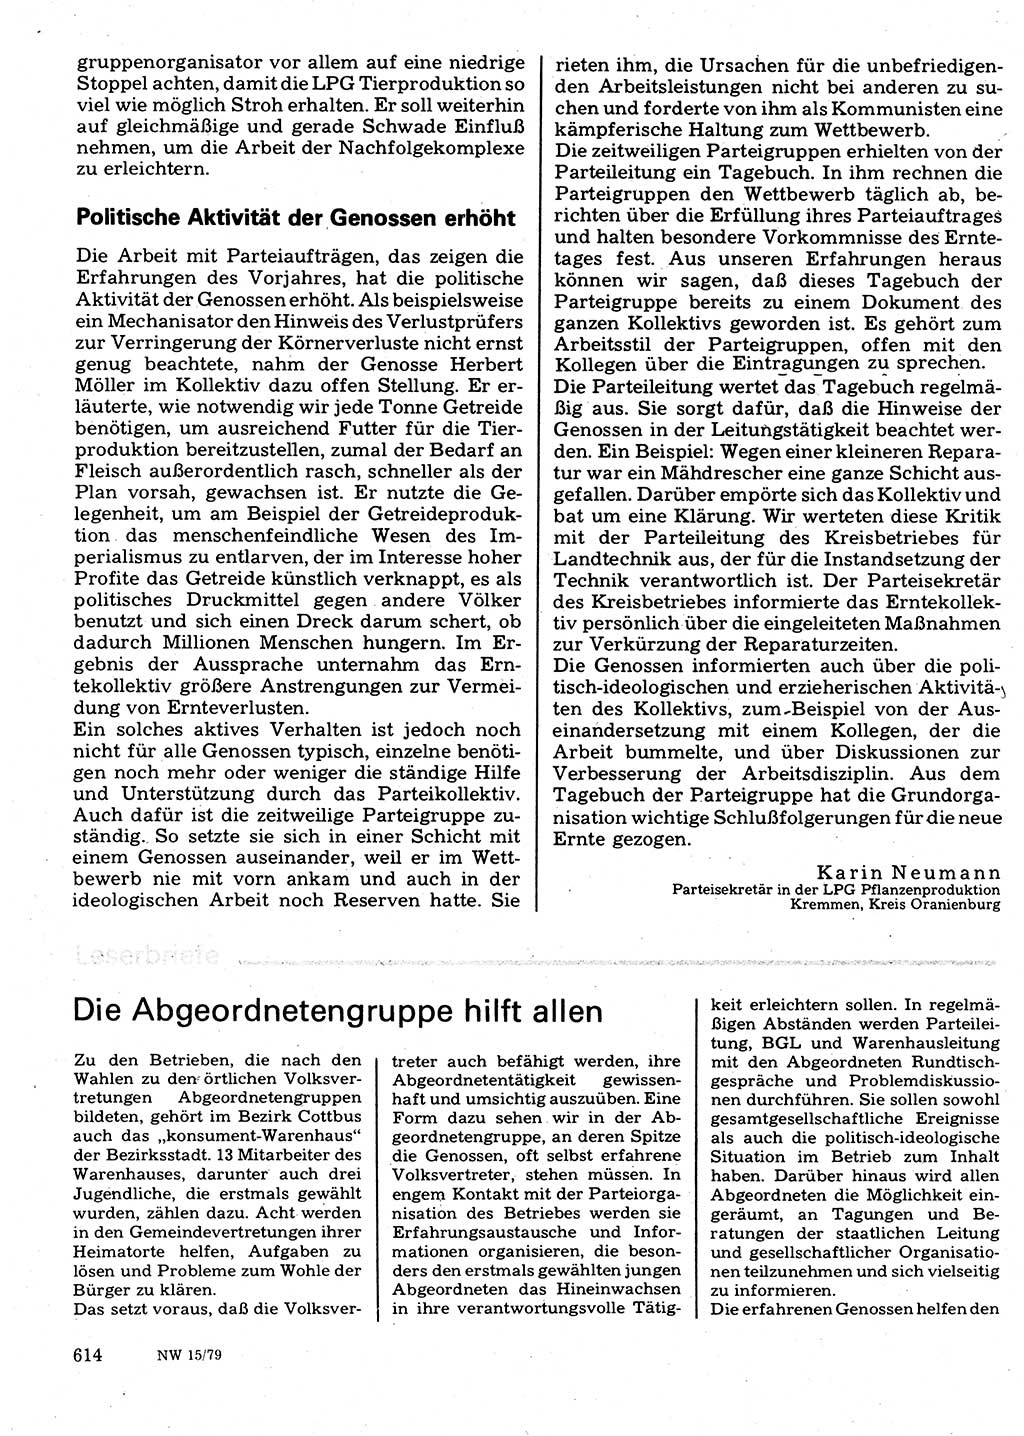 Neuer Weg (NW), Organ des Zentralkomitees (ZK) der SED (Sozialistische Einheitspartei Deutschlands) für Fragen des Parteilebens, 34. Jahrgang [Deutsche Demokratische Republik (DDR)] 1979, Seite 614 (NW ZK SED DDR 1979, S. 614)